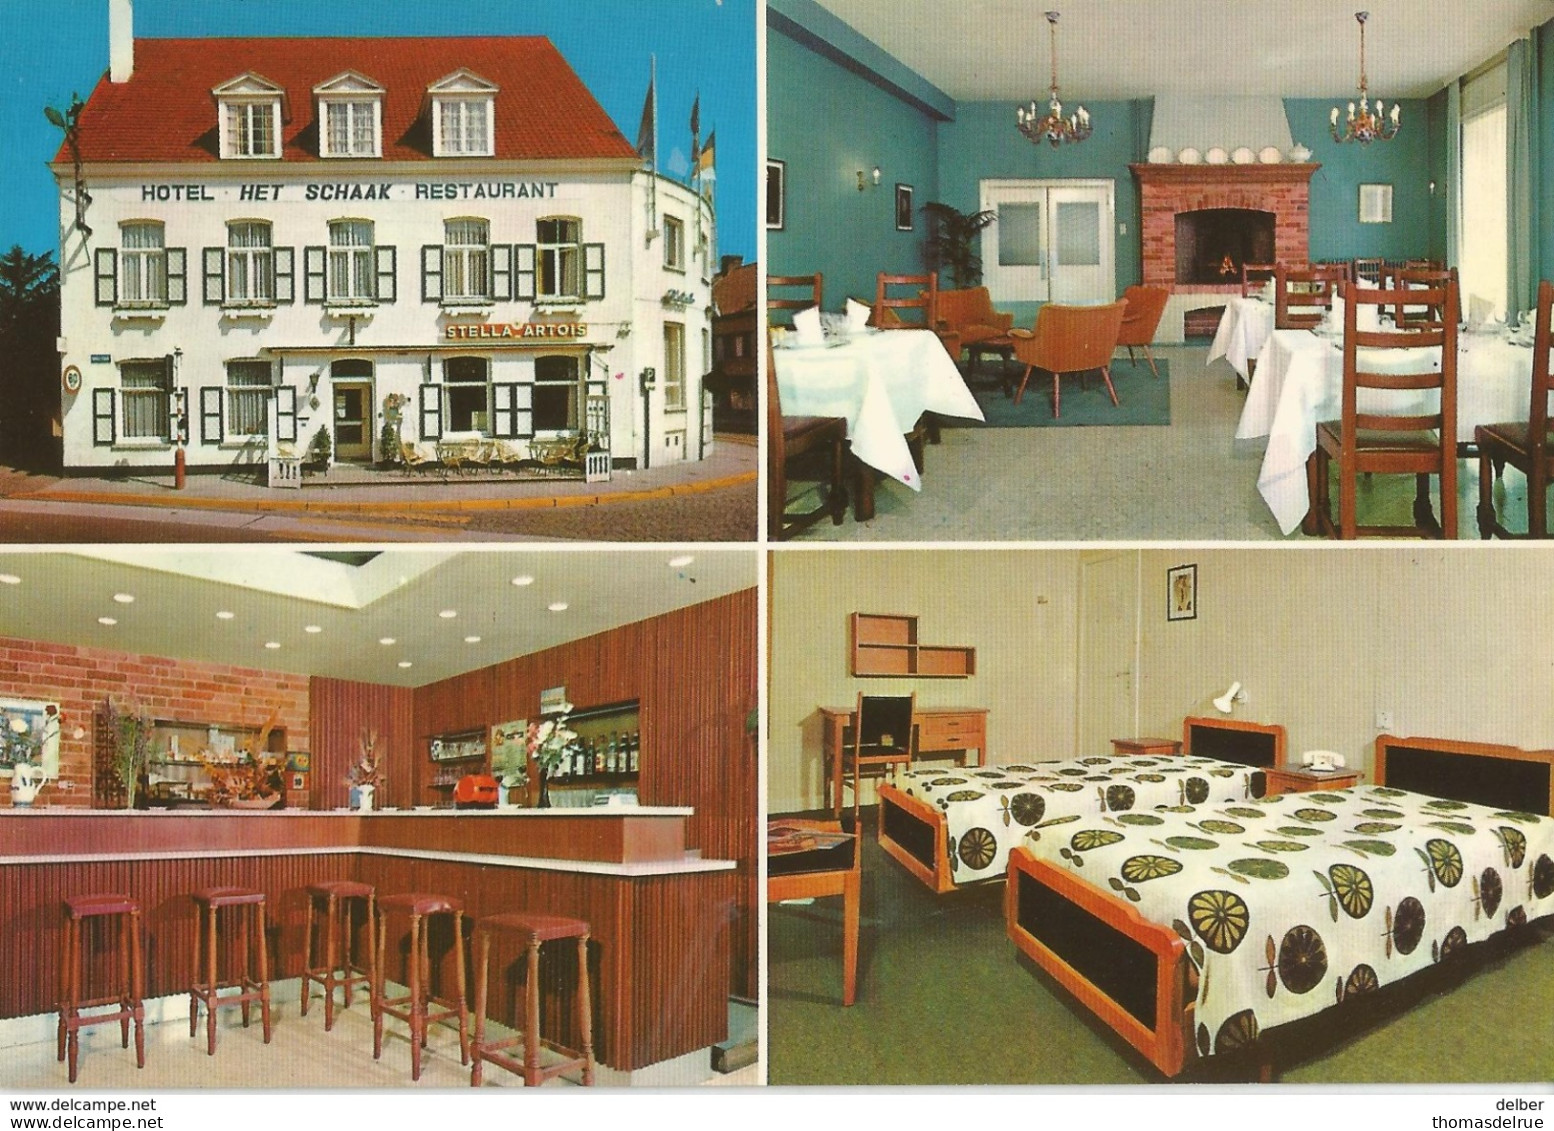 6Rm965: HOTEL RESTAURANT HET SCHAAK N.V. Brugse Straat 2 - Markt OOSTKAMP... Stella Artois - Oostkamp